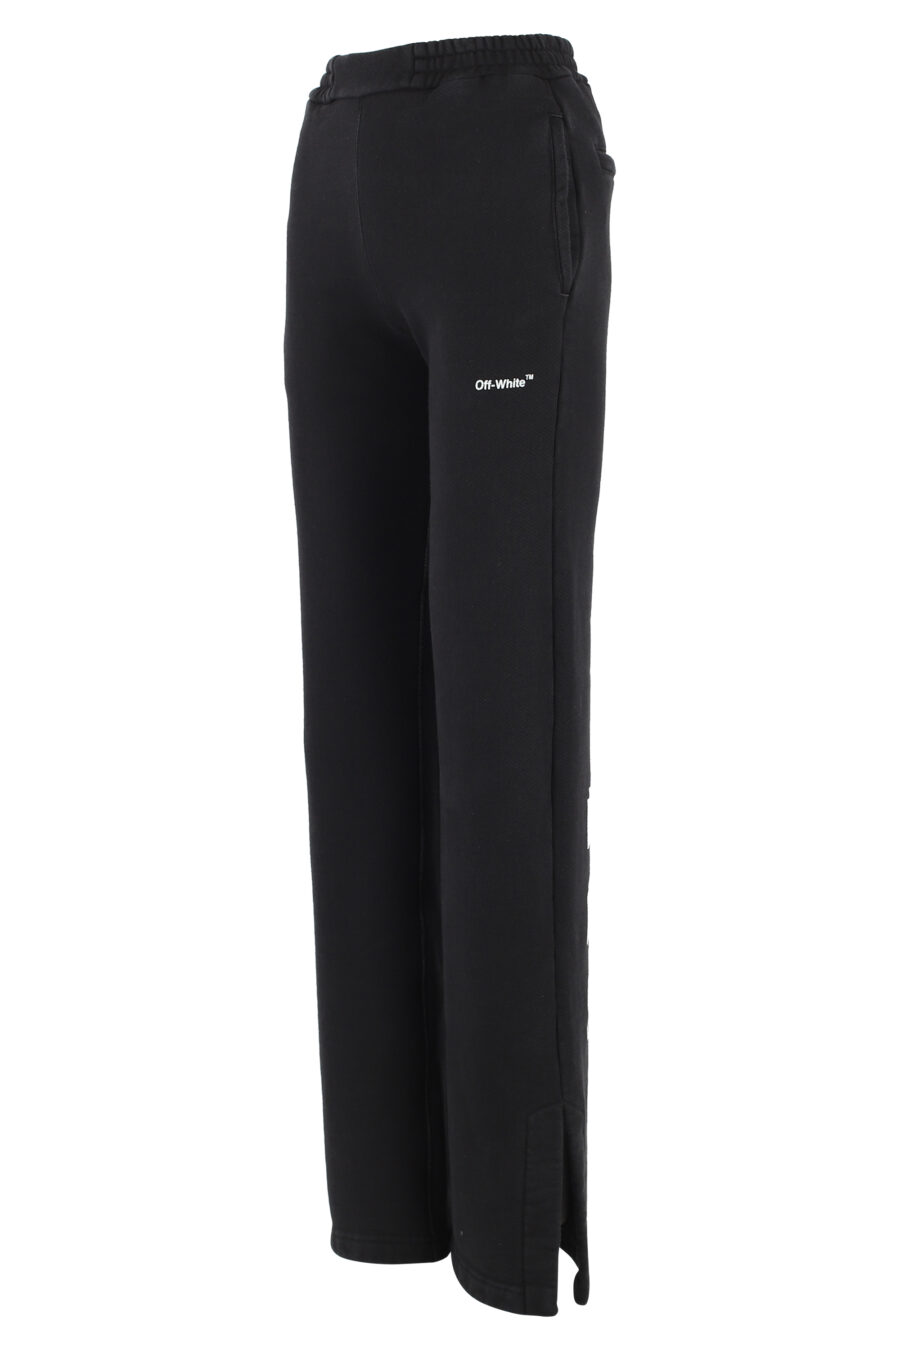 Pantalon de chandal negro con logo blanco "Diag" - IMG 5057